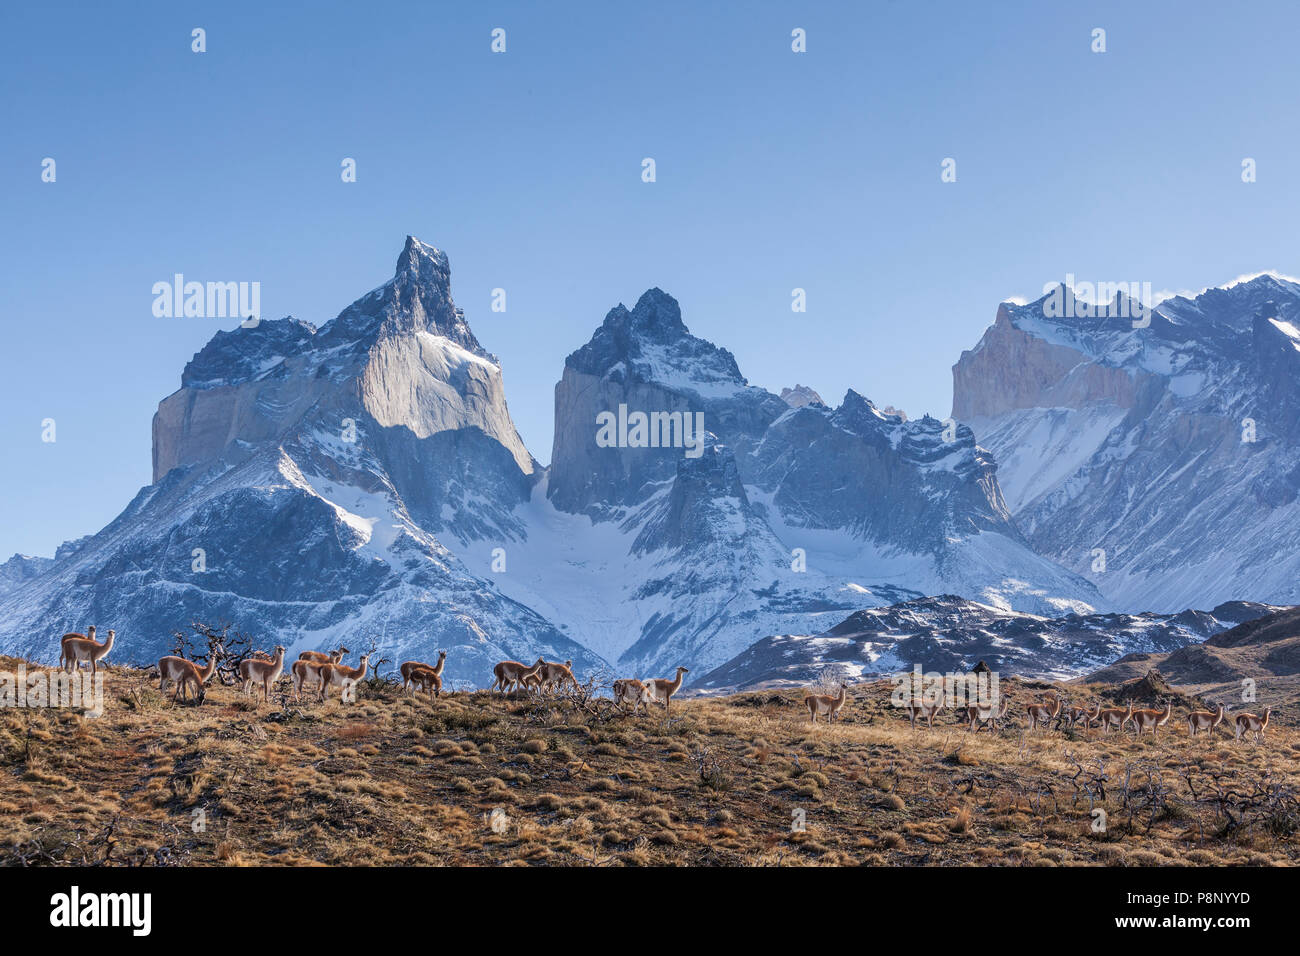 Troupeau de guanaco (Lama guanicoe) avec la paine de montagnes en arrière-plan Banque D'Images